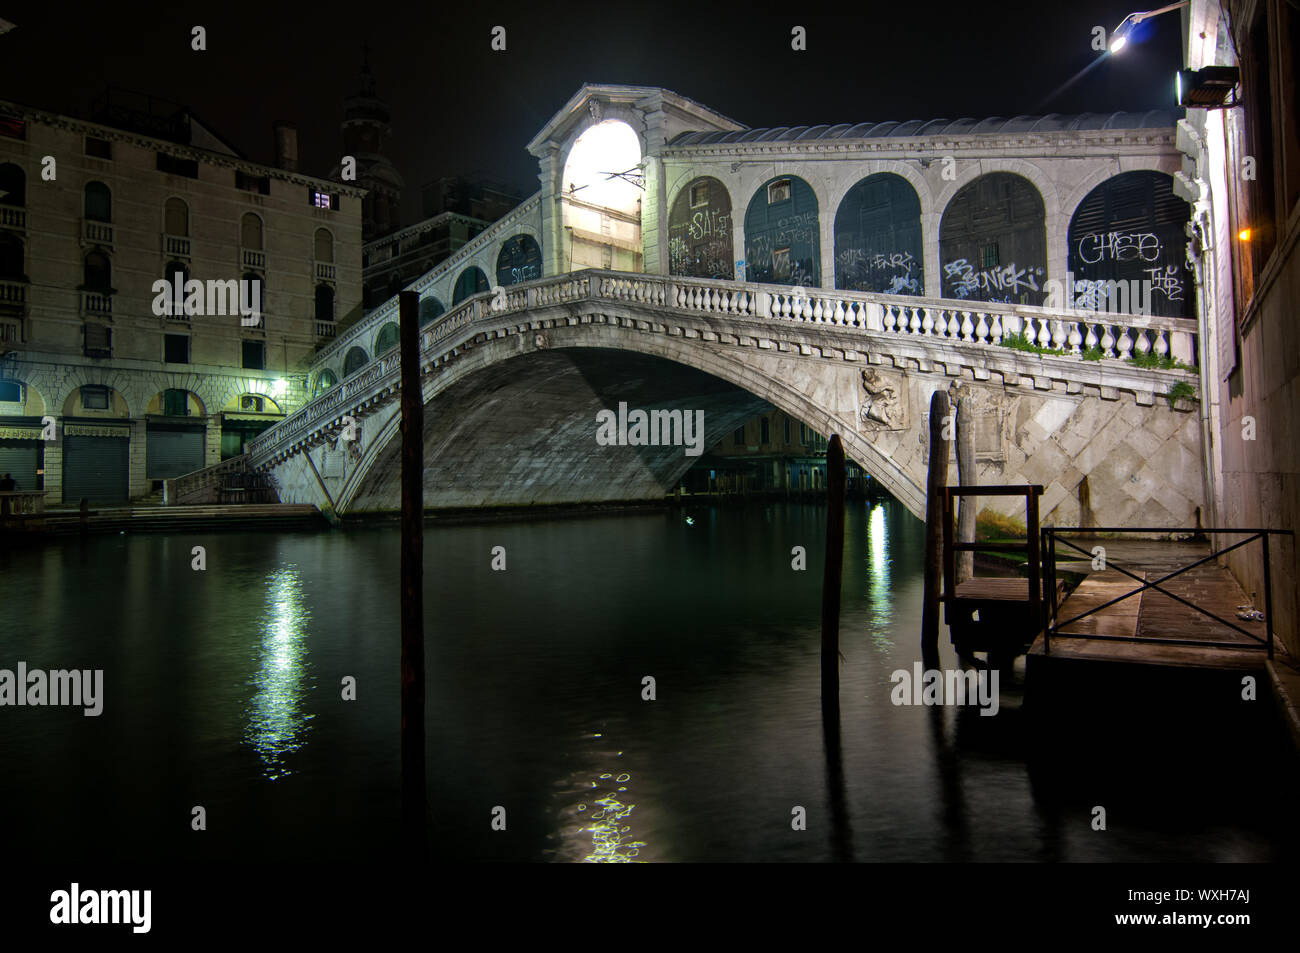 Venecia Italia puente Rialto ver uno de los iconos de la ciudad Foto de stock